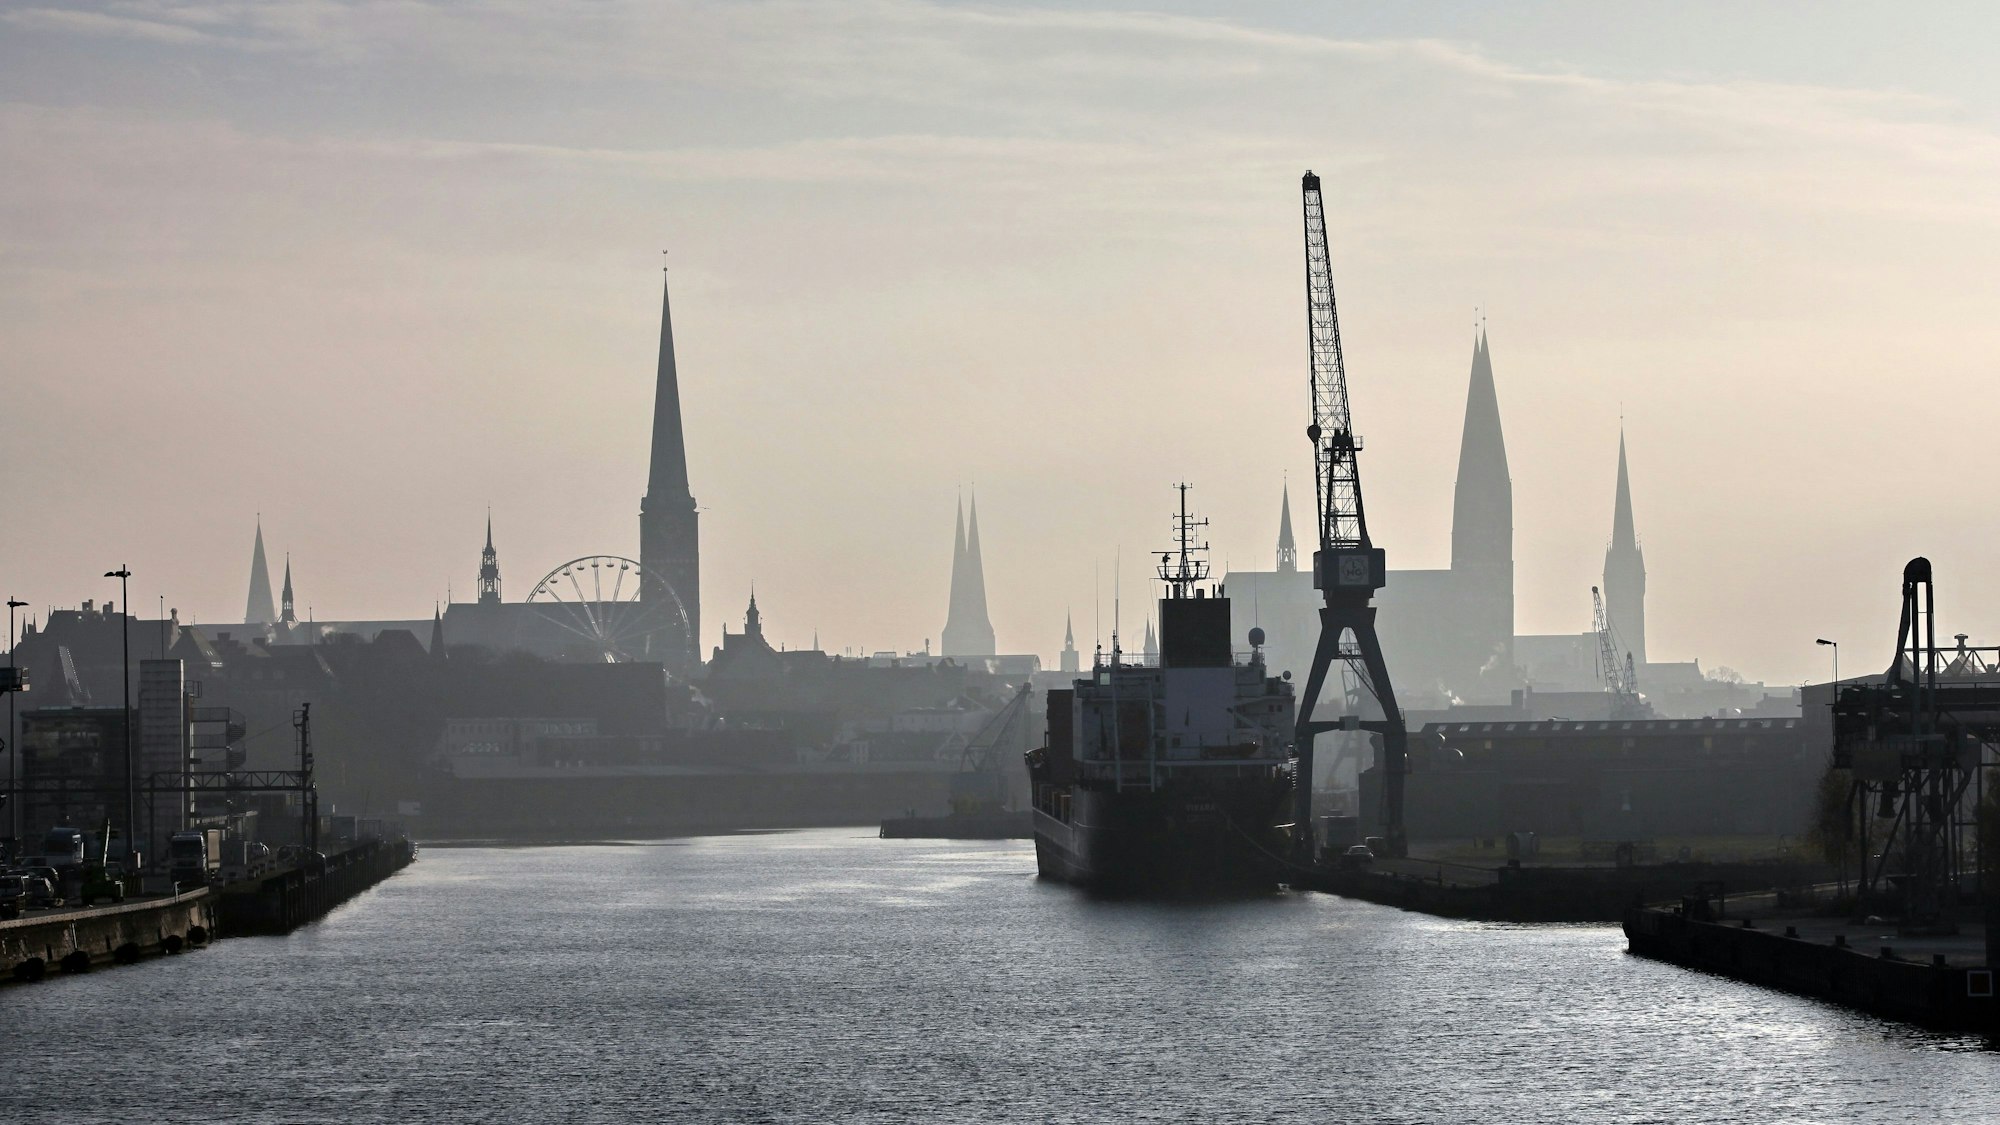 Hafen bei Lübeck in diesiger Luft.